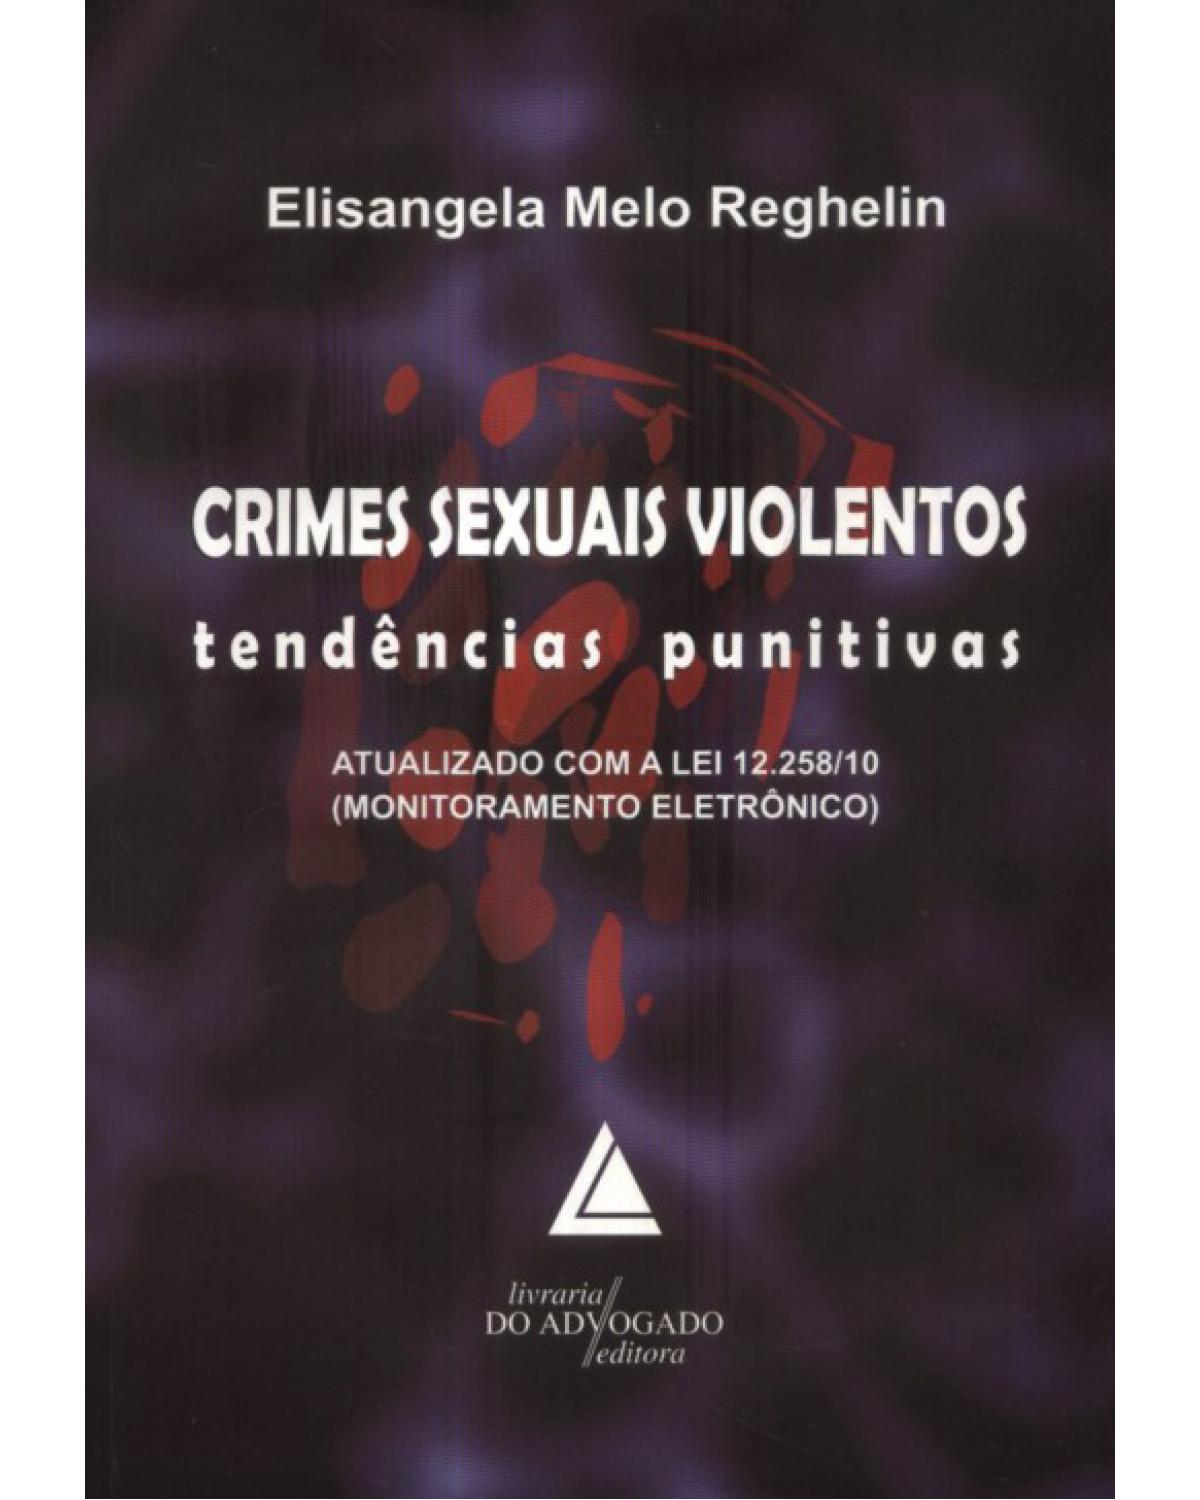 Crimes sexuais violentos: tendências punitivas - Atualizado com a lei 12.258/10 - 1ª Edição | 2010